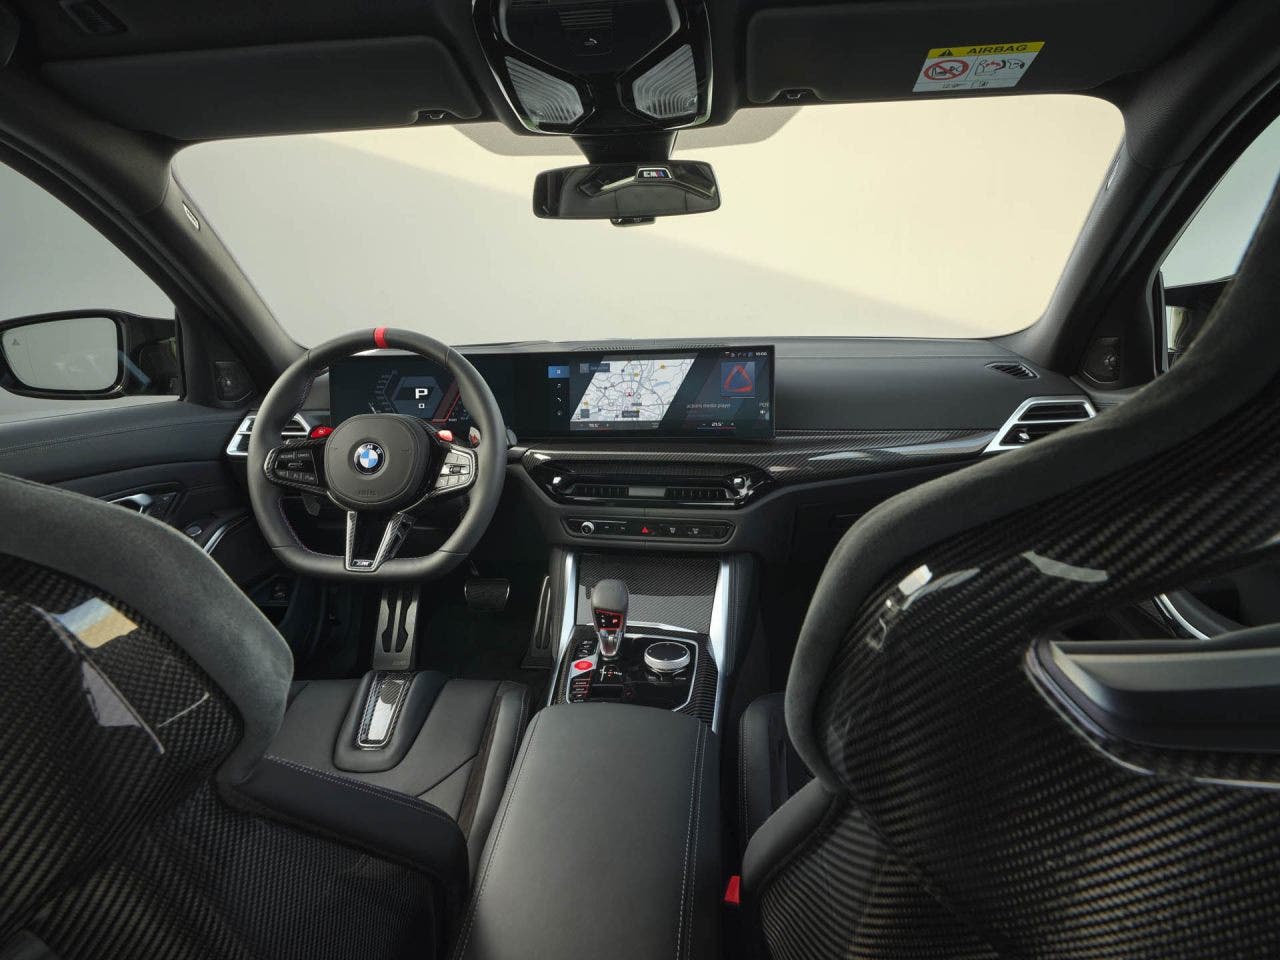 BMW M3, è arrivato il restyling